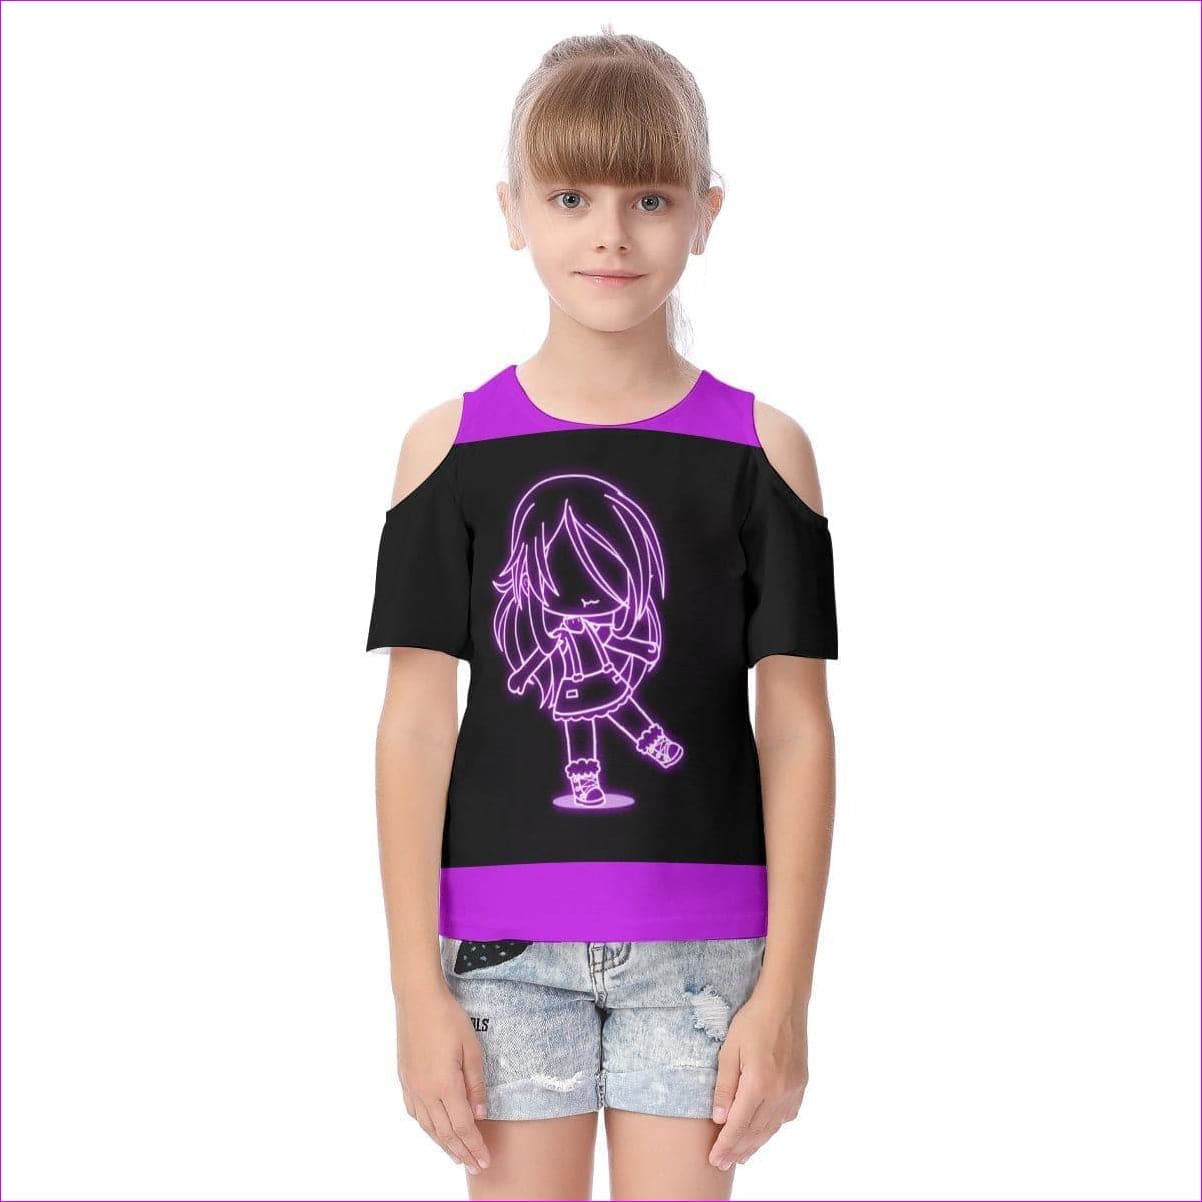 Black - Neon Girl Kids Cold Shoulder T-shirt - Kids t-shirt at TFC&H Co.